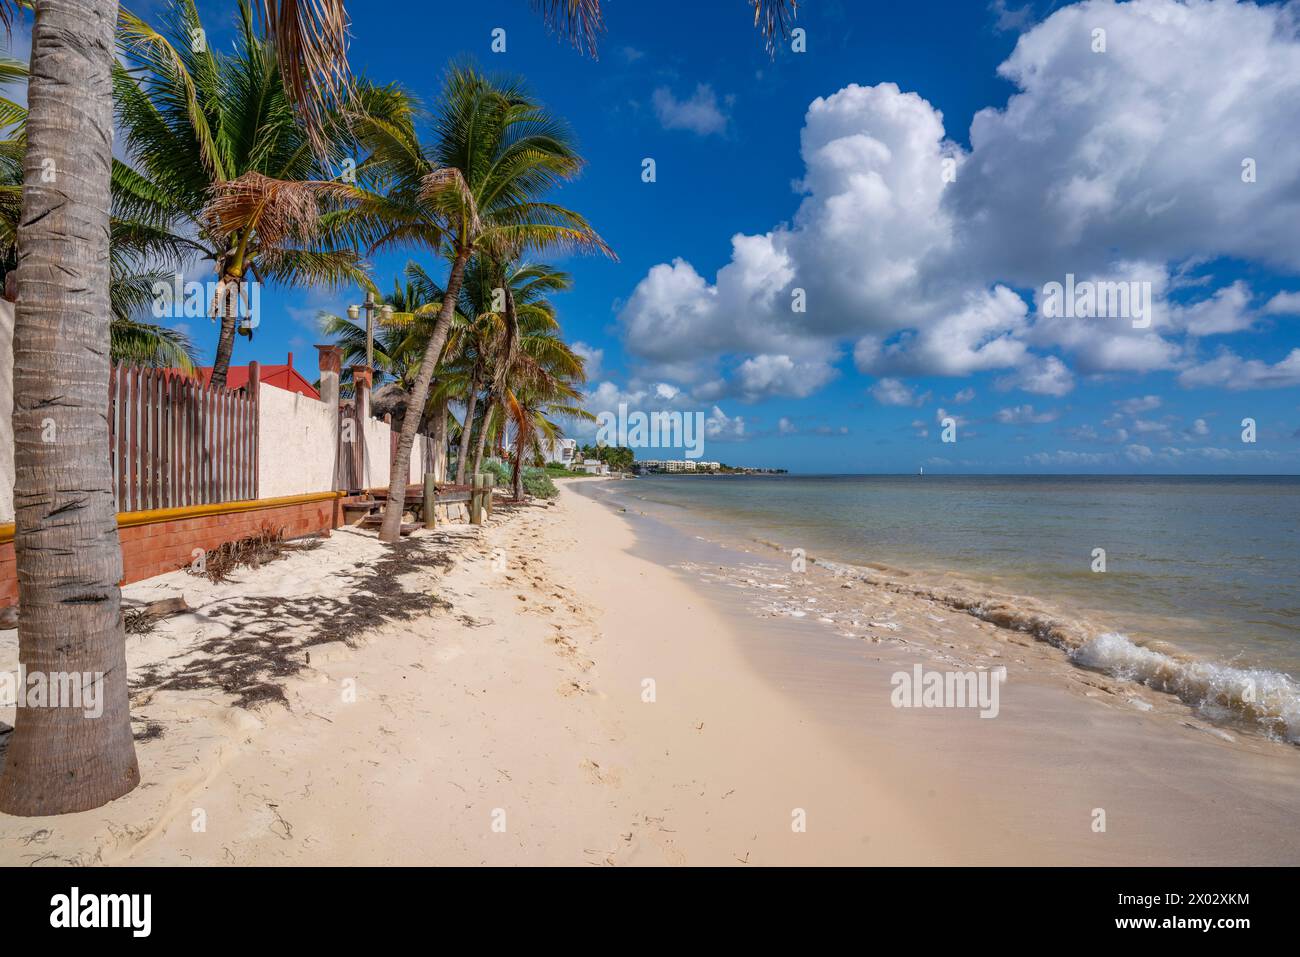 Vista de la playa cerca de Puerto Morelos, Costa Caribe, Península de Yucatán, México, América del Norte Foto de stock